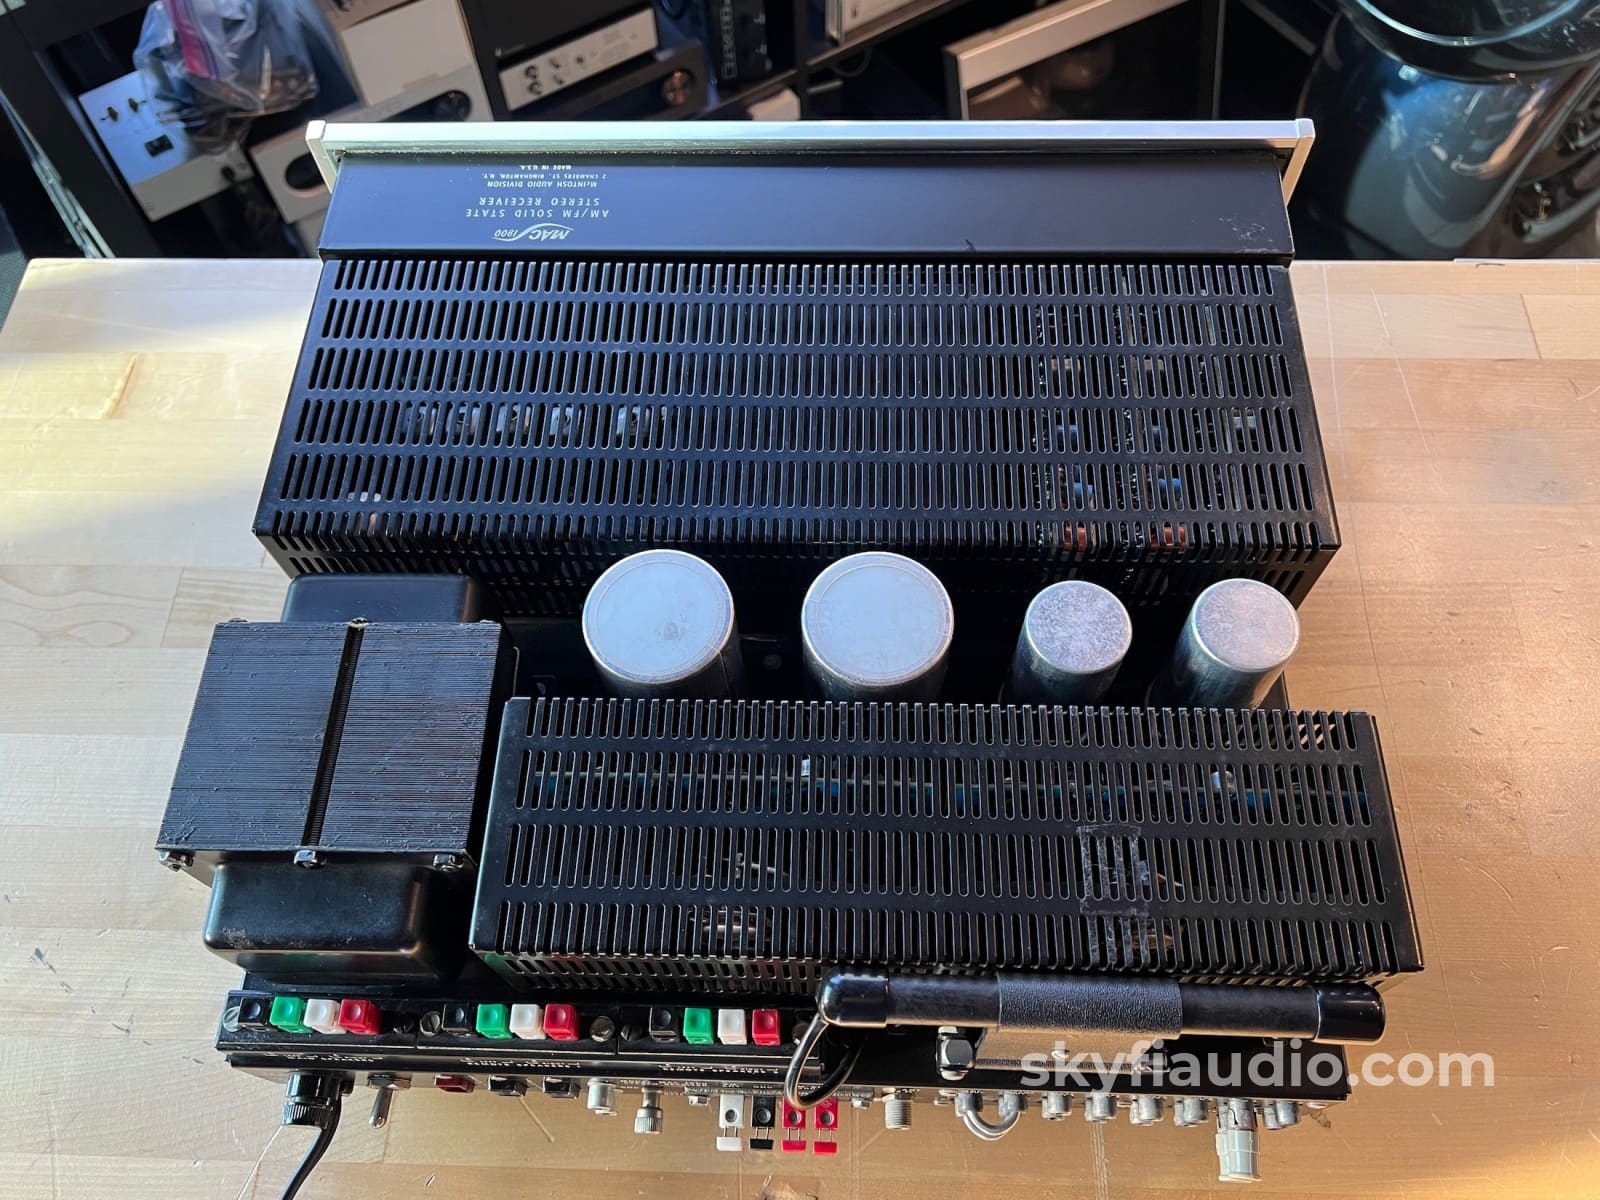 Mcintosh Mac1900 The Original High-End Stereo Receiver - Rare Survivor Condition Integrated